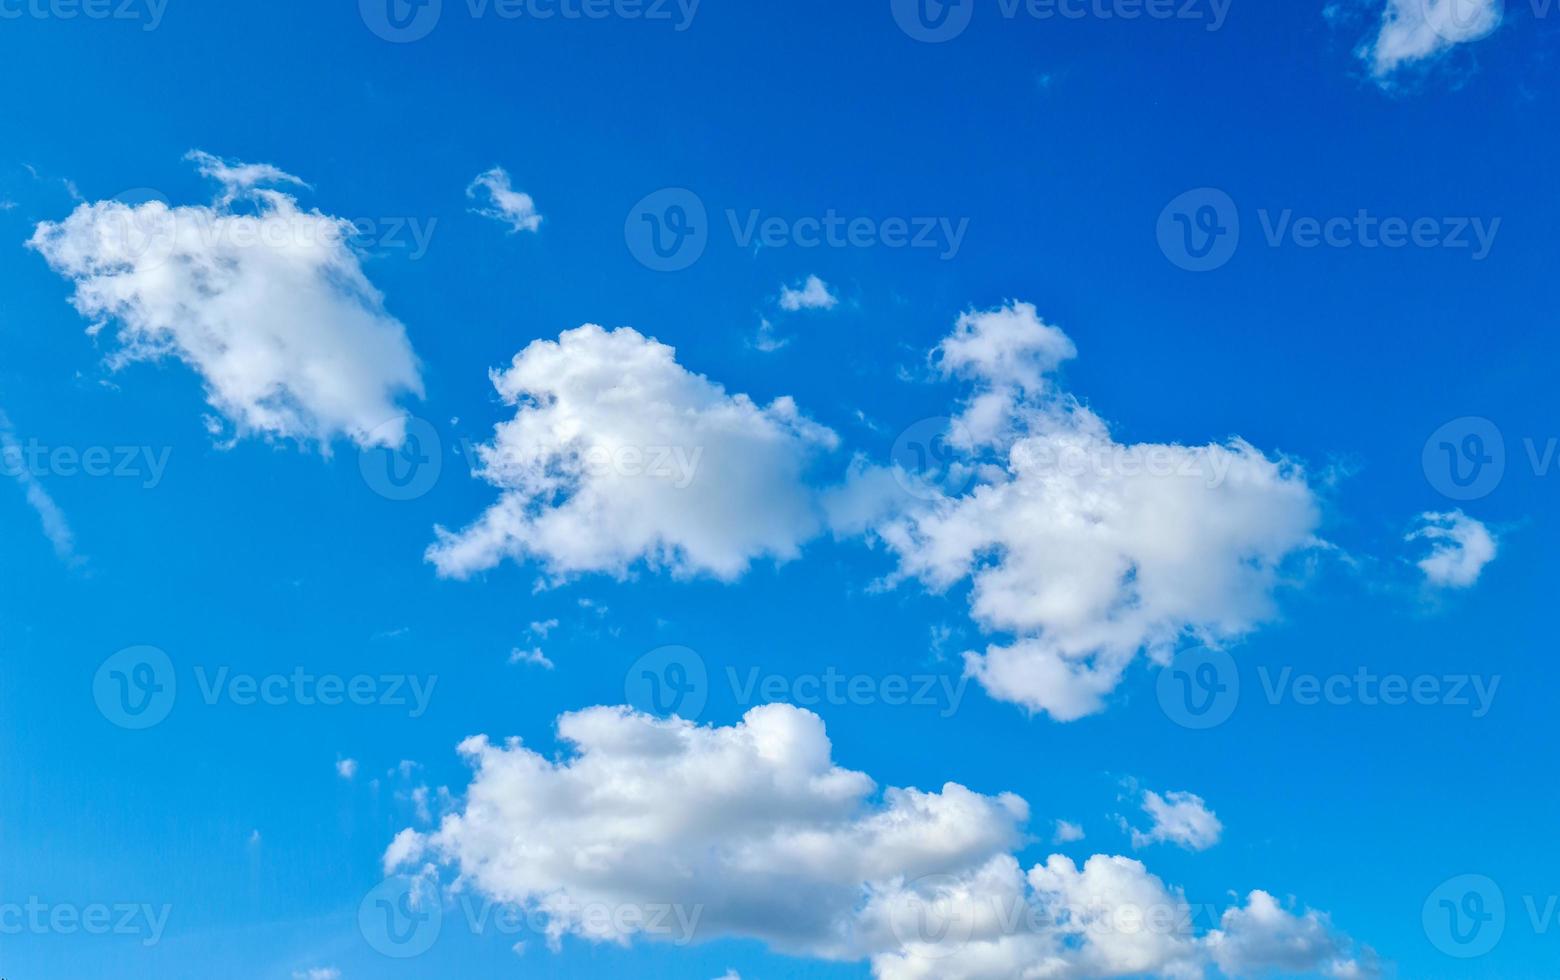 fond de ciel bleu avec des nuages photo